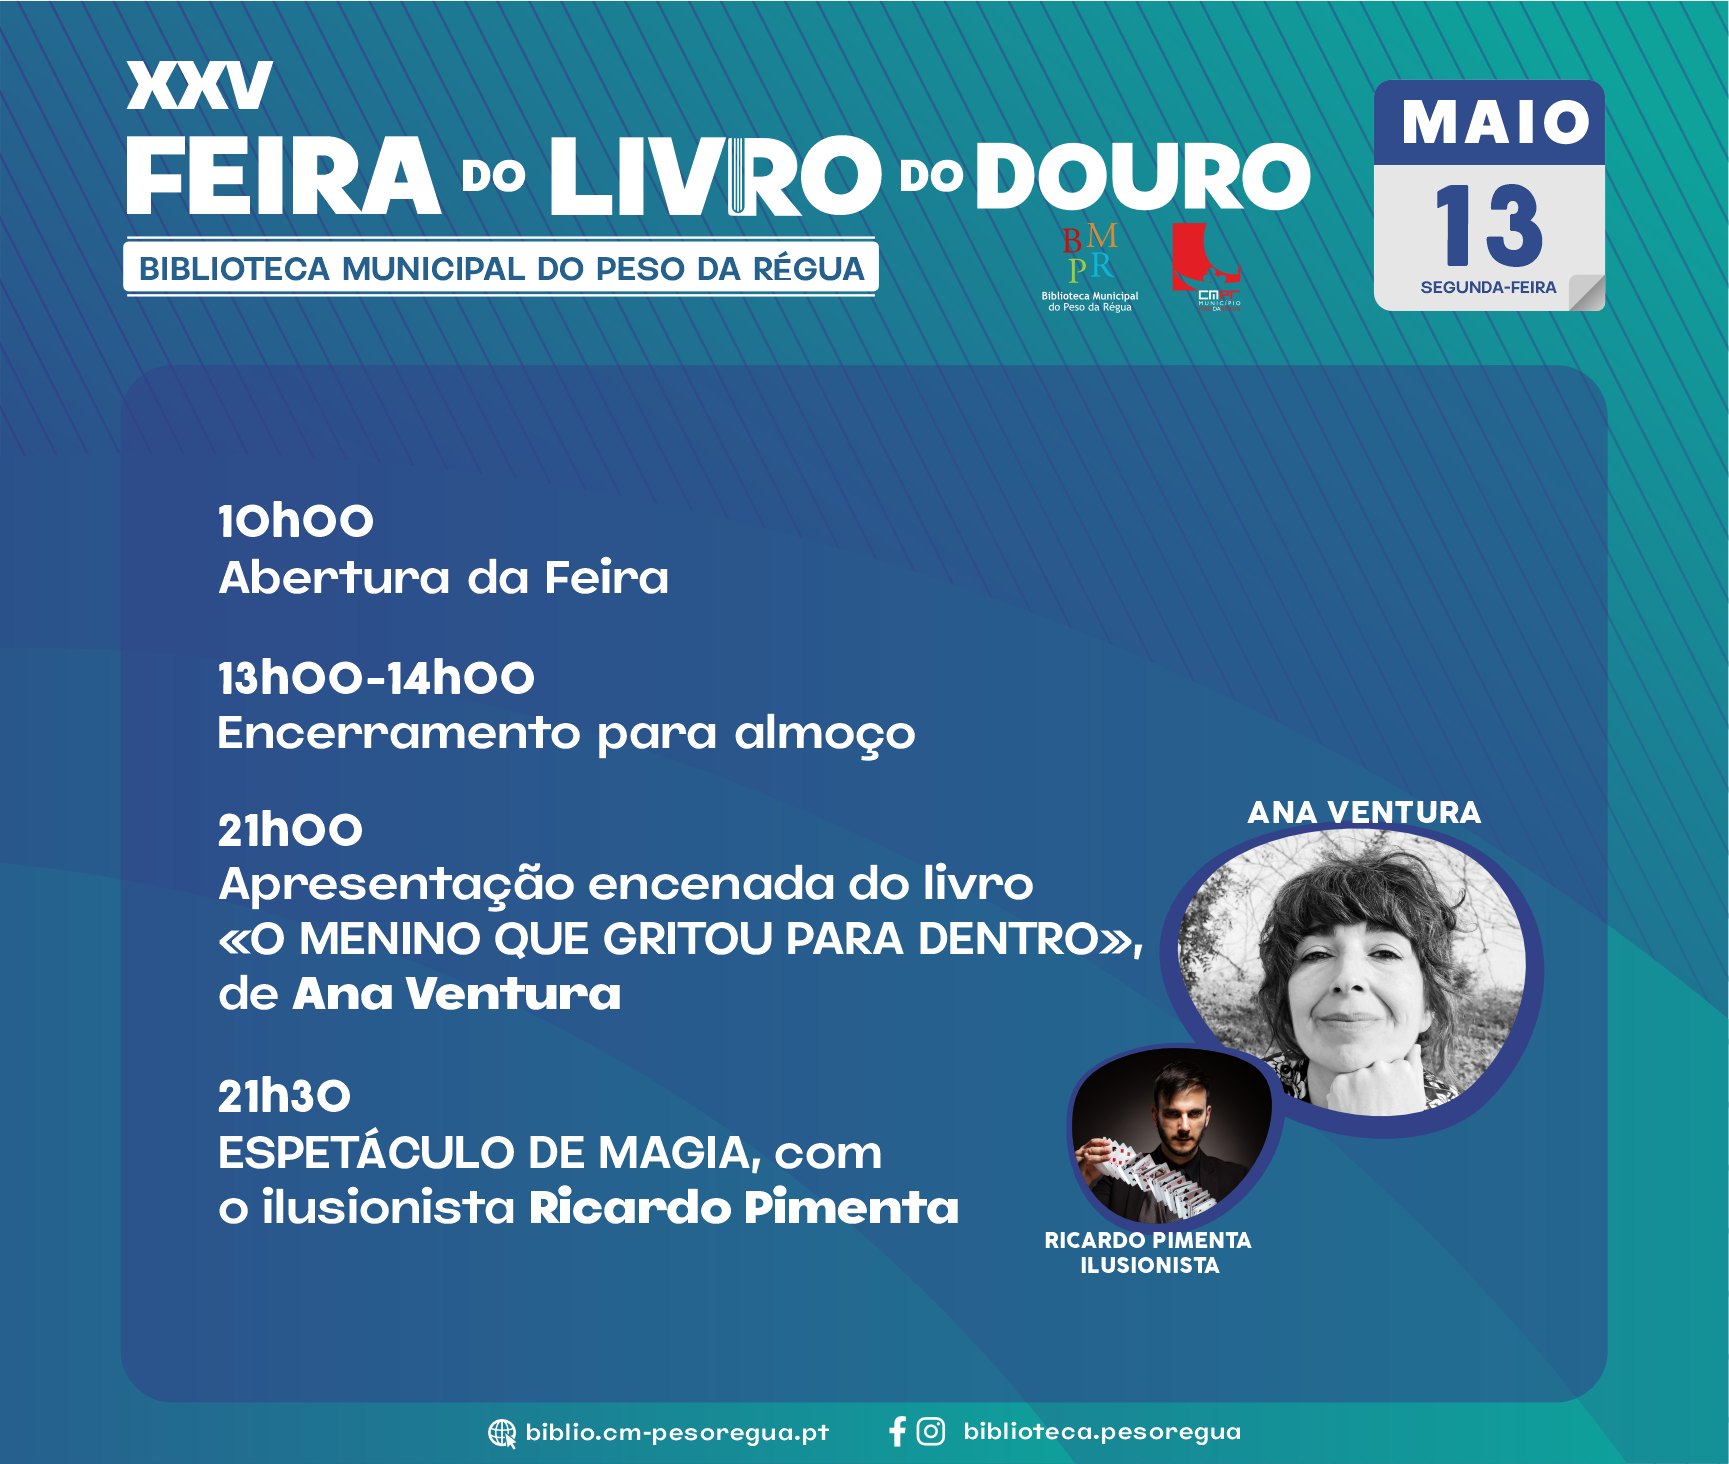 XXV Feira do Livro do Douro